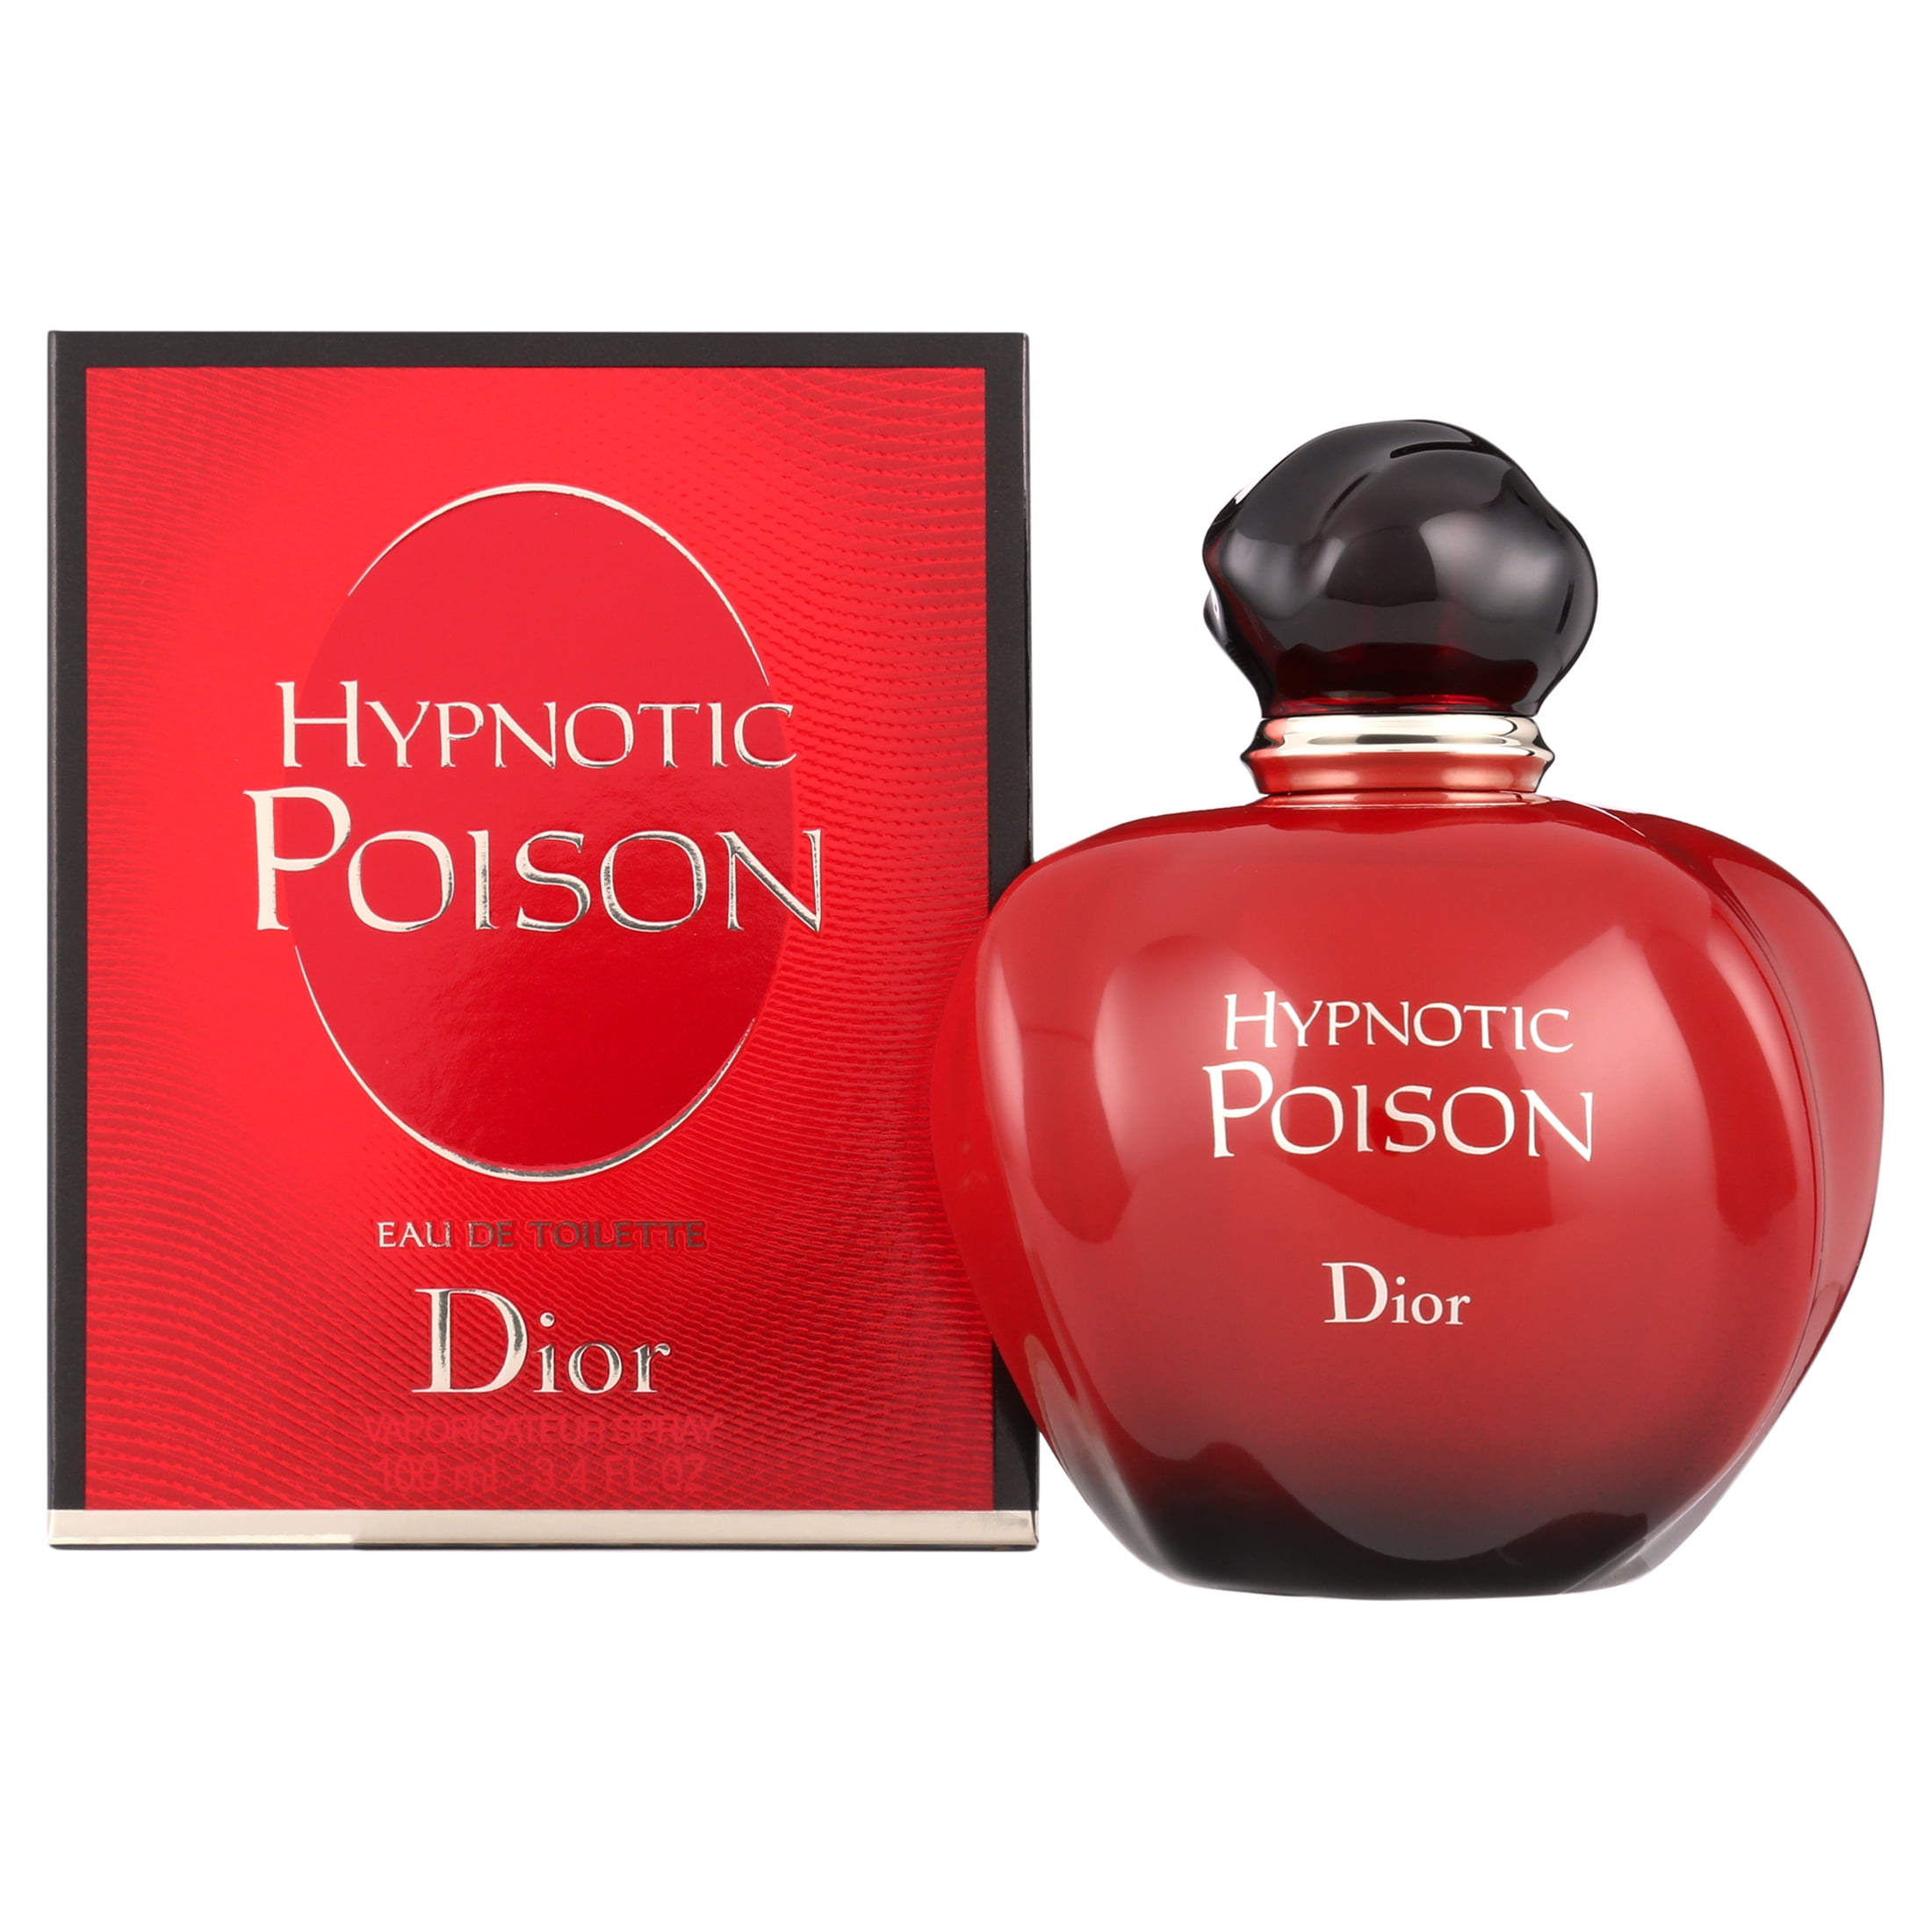 Poison - Women's Fragrance